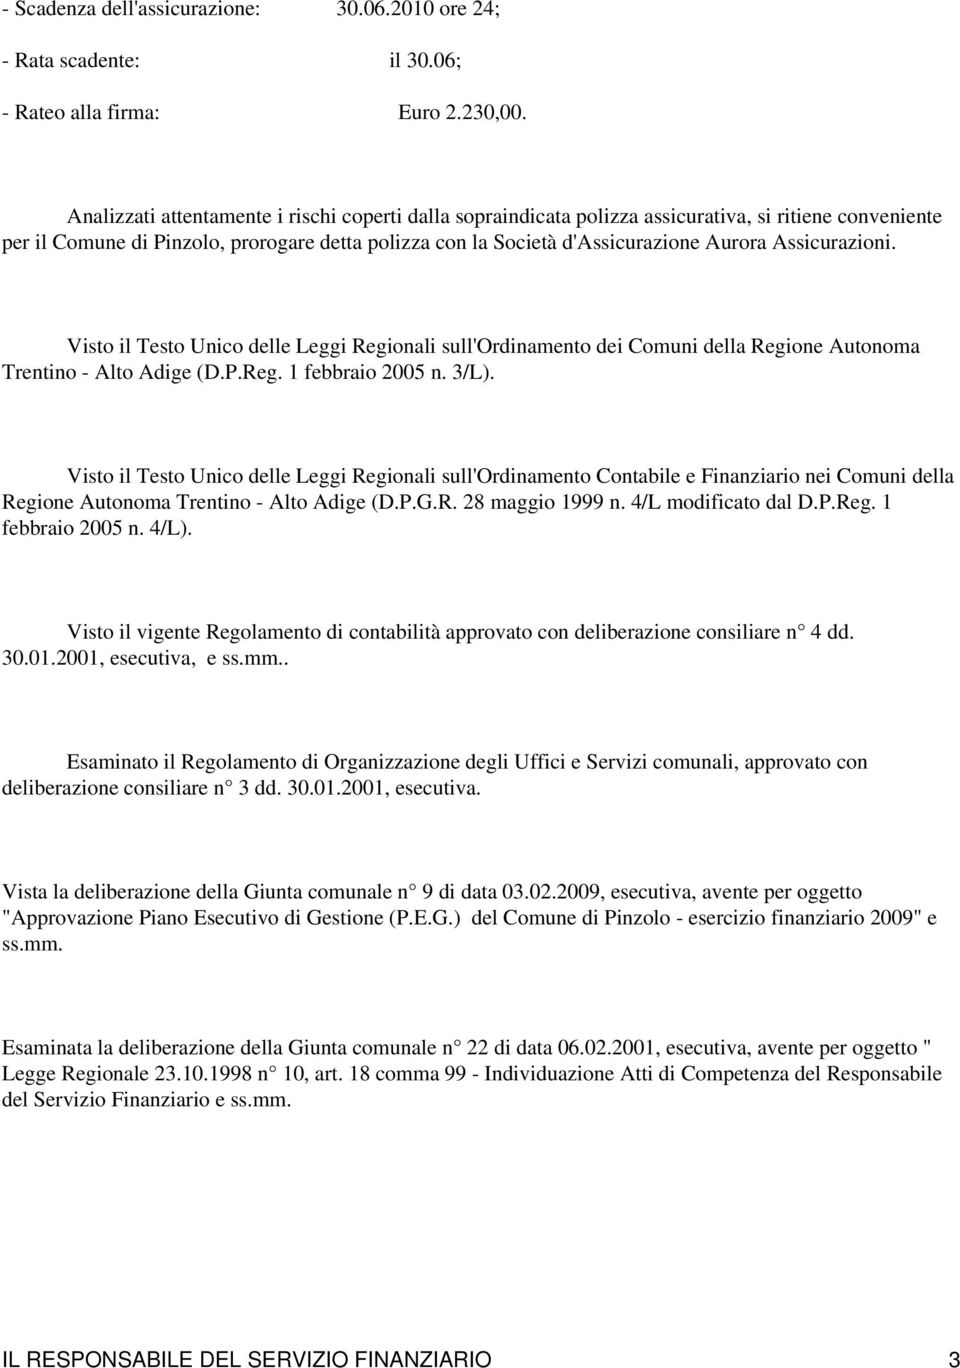 Assicurazioni. Visto il Testo Unico delle Leggi Regionali sull'ordinamento dei Comuni della Regione Autonoma Trentino - Alto Adige (D.P.Reg. 1 febbraio 2005 n. 3/L).